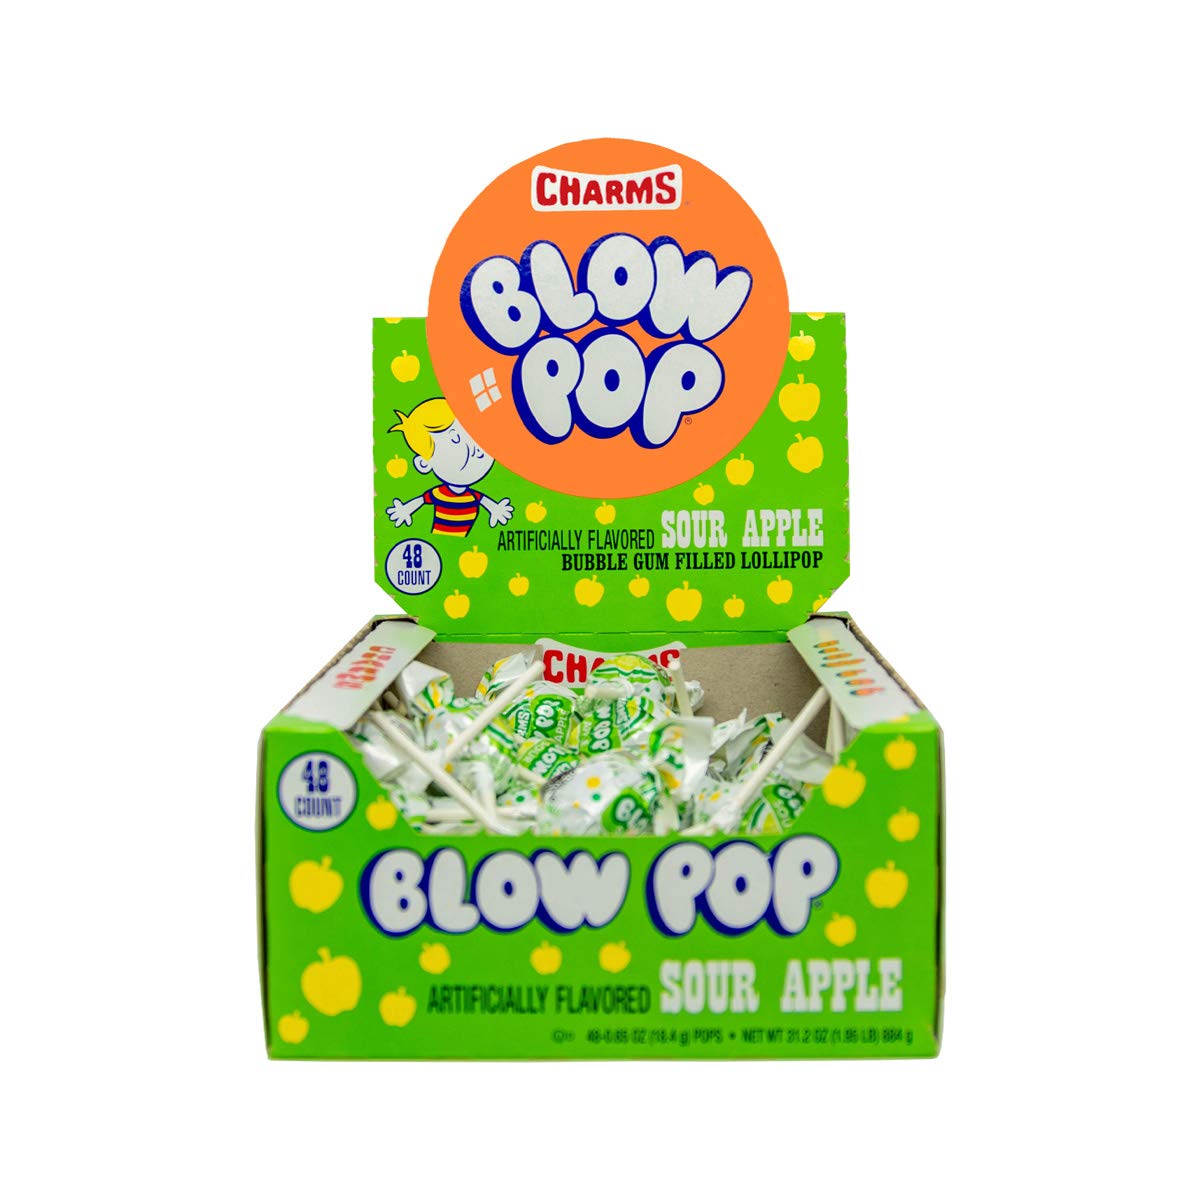  Charms Blow Pops, Sour Apple Flavor, 48-Count Box